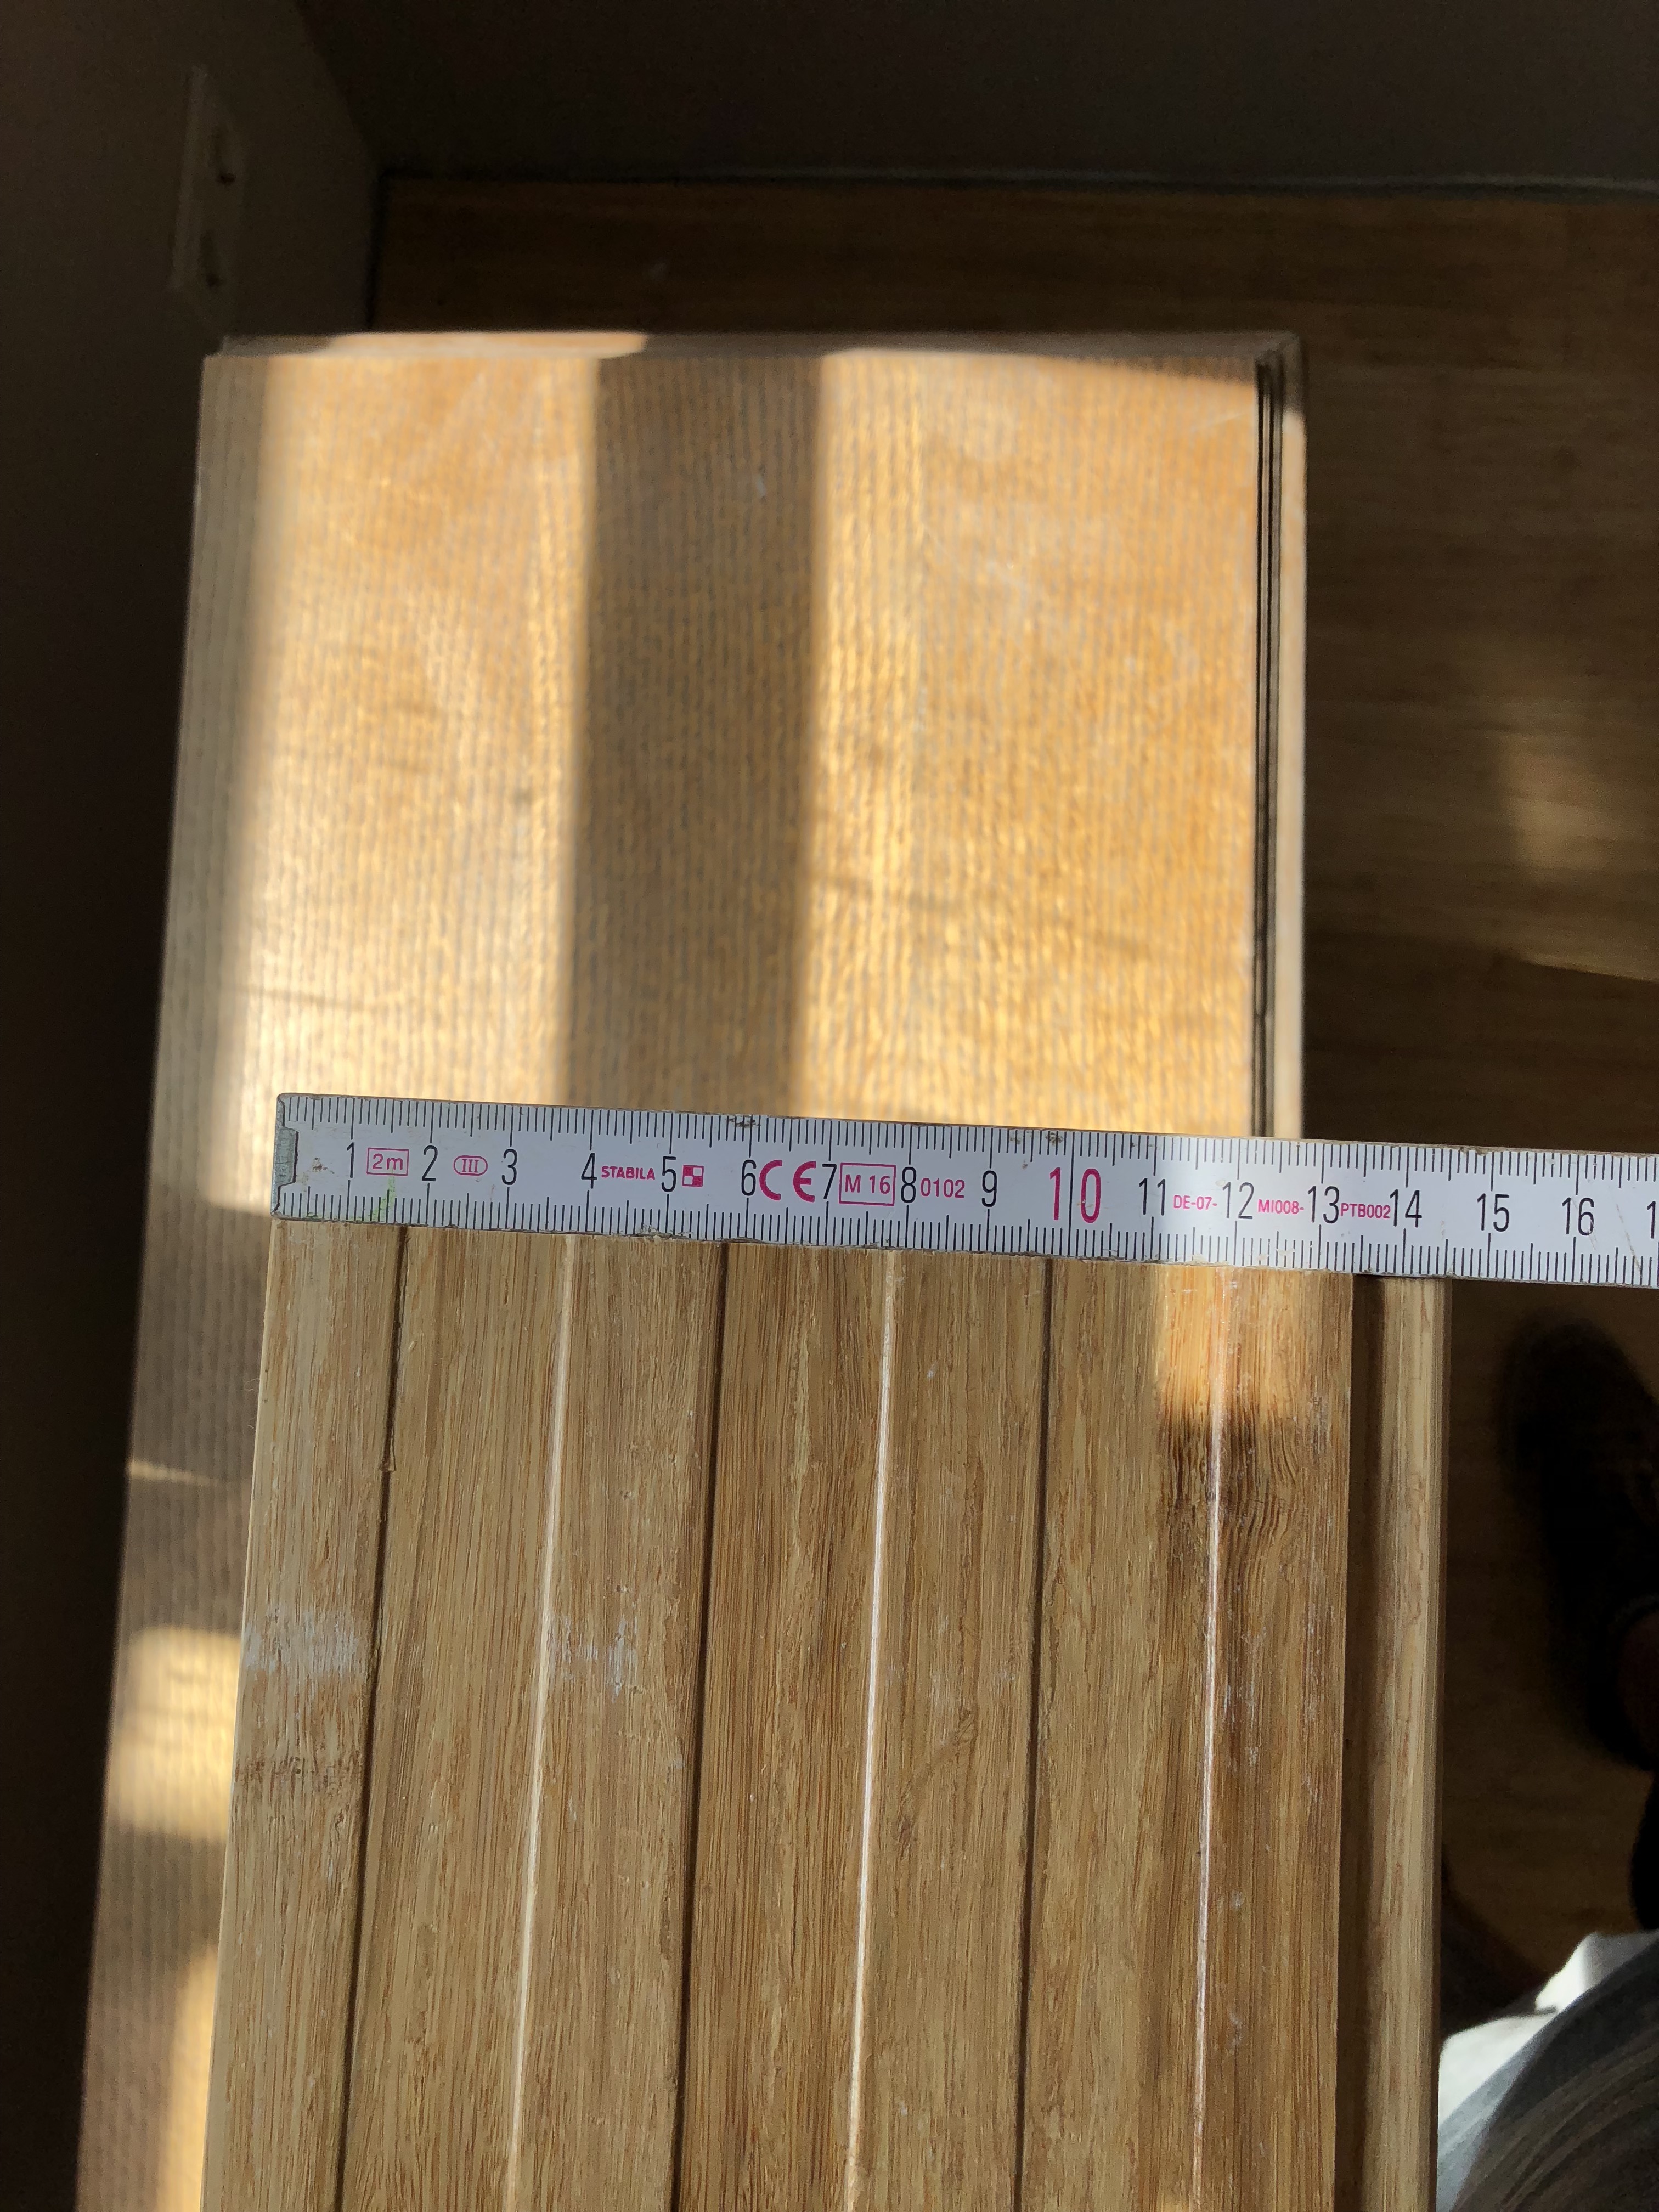 bambus-parkett-hersteller-wer-produziert-dieses-bambusparkett-290196-2.JPG